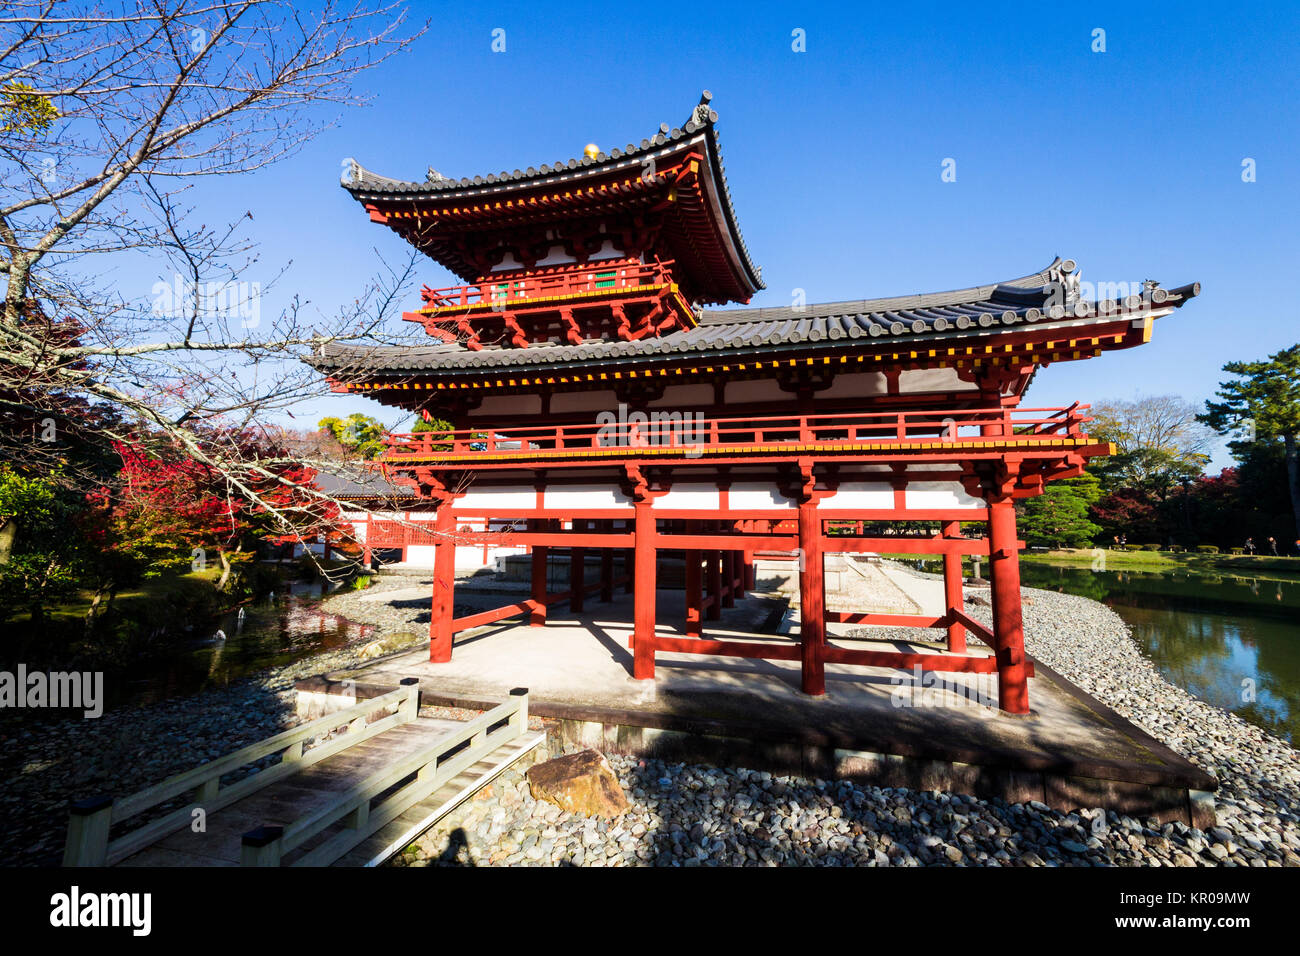 Byodo-in un tempio buddista nella città di Uji nella prefettura di Kyoto, Giappone, costruito nel tardo periodo Heian. Un sito del Patrimonio mondiale dal 1994 Foto Stock